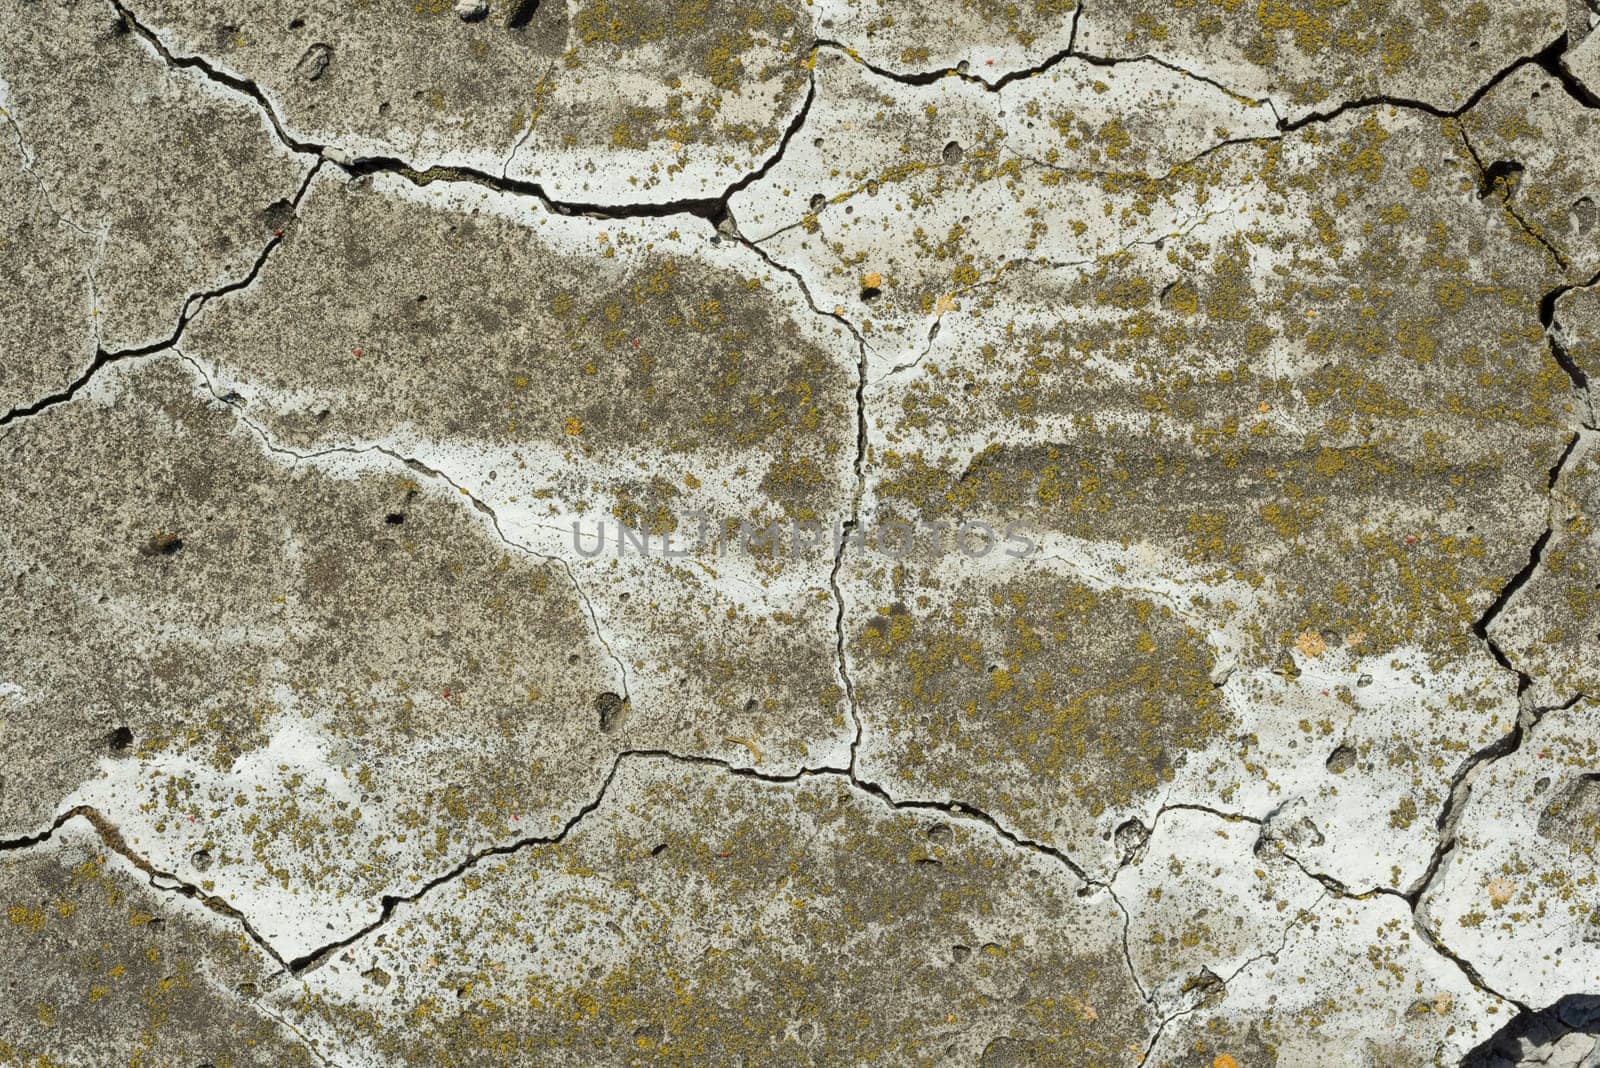 Cracked concrete cement texture closeup texture background.